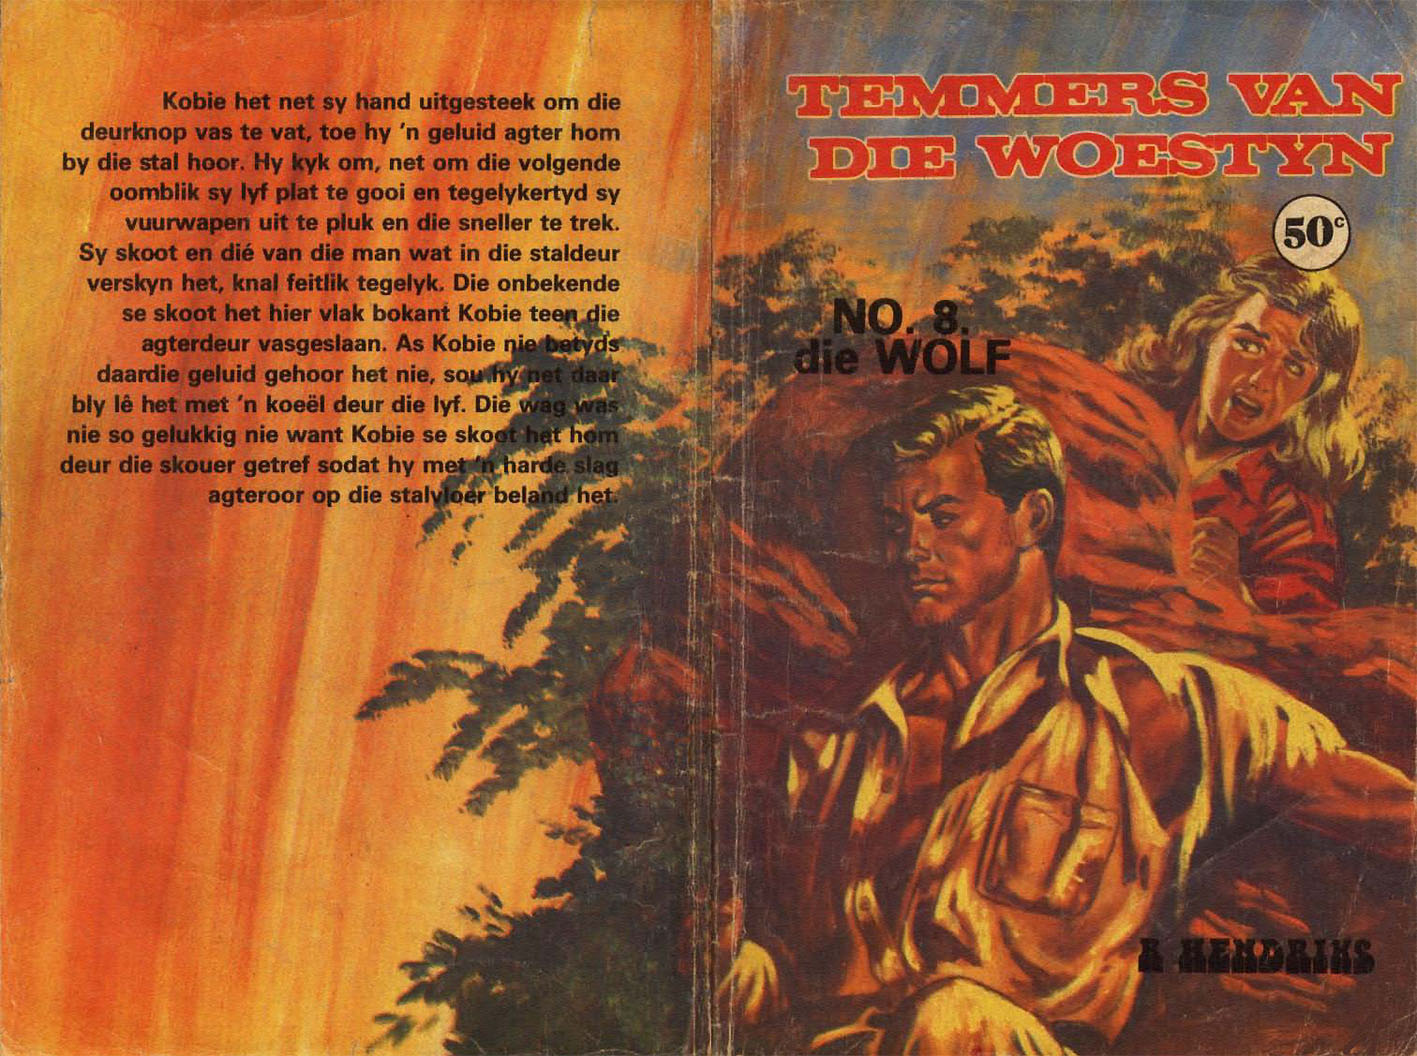 Die wolf - R. Hendriks (1980's)